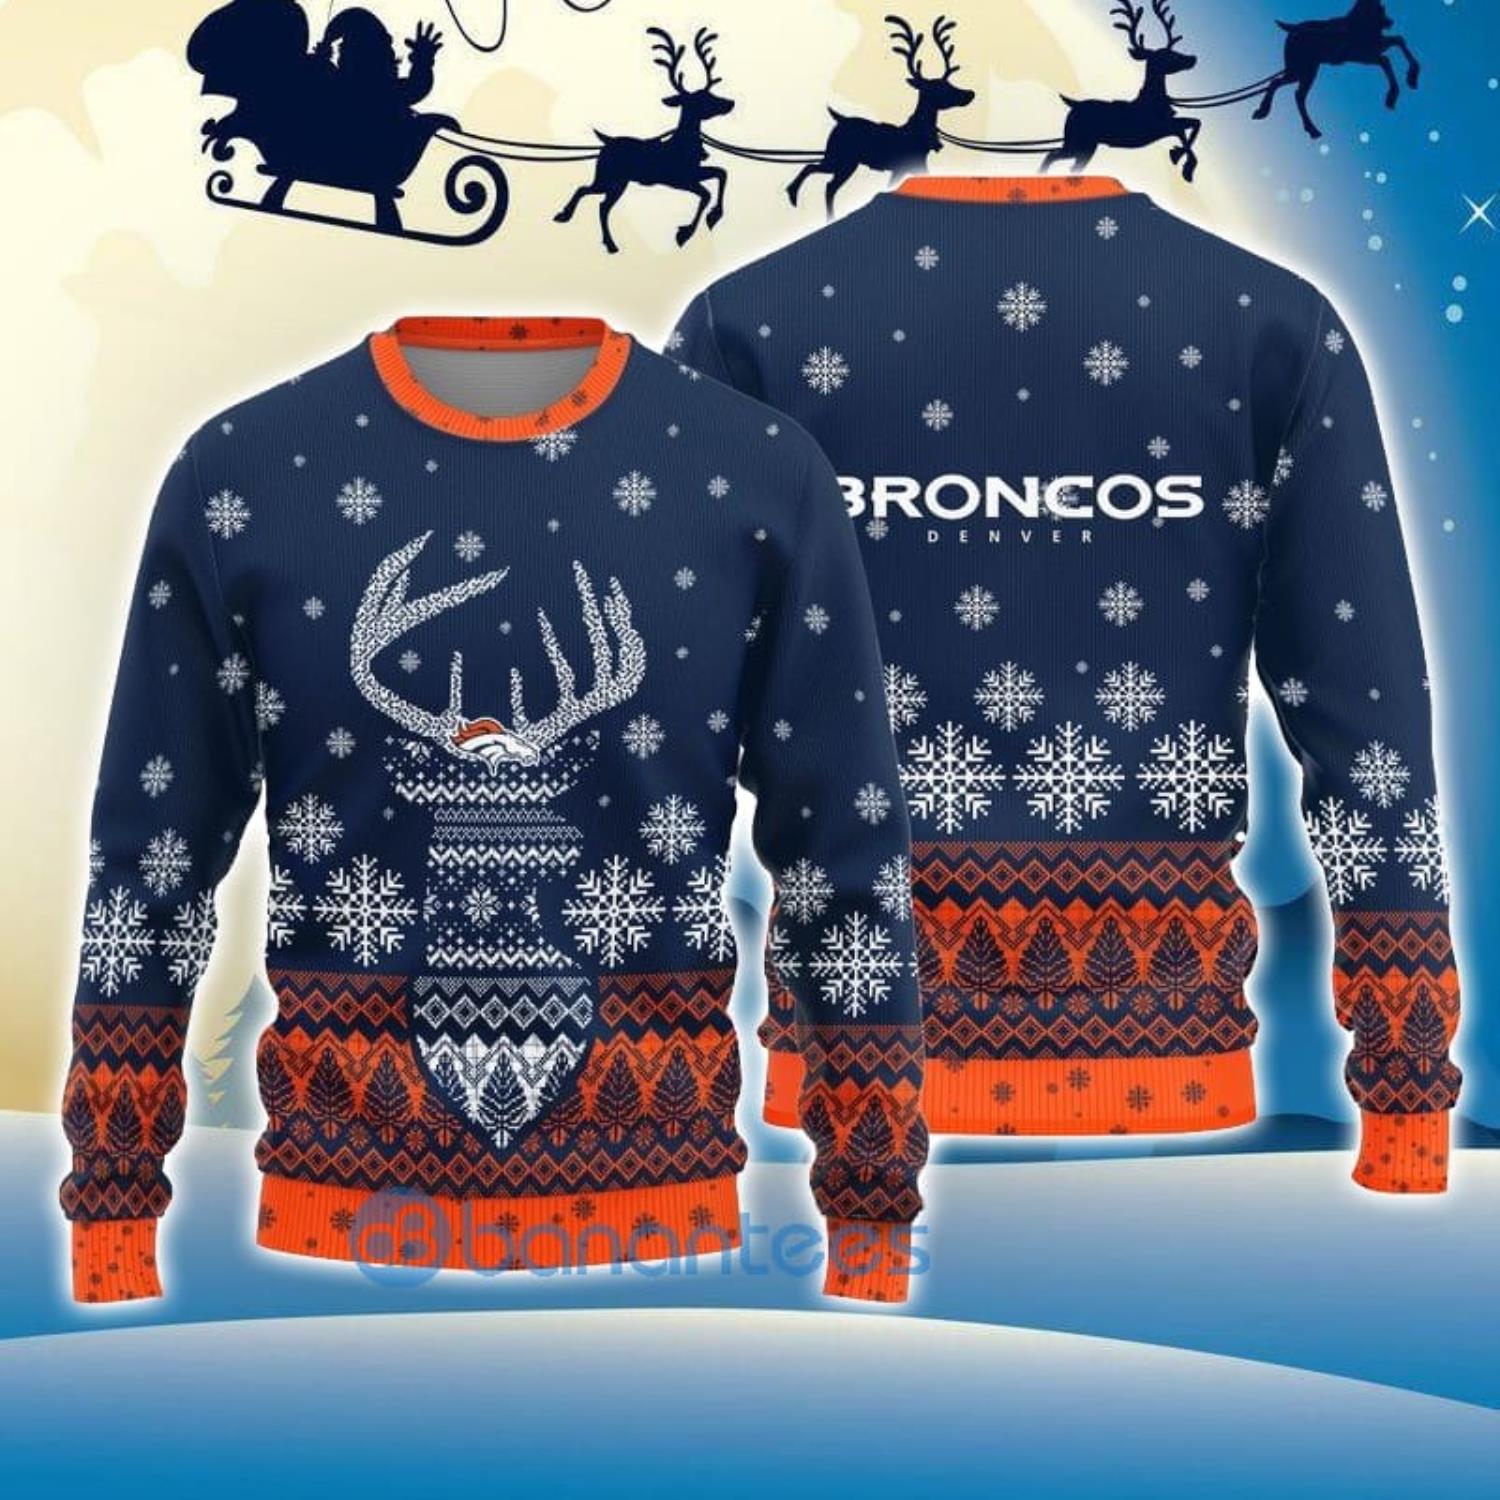 denver broncos christmas sweater